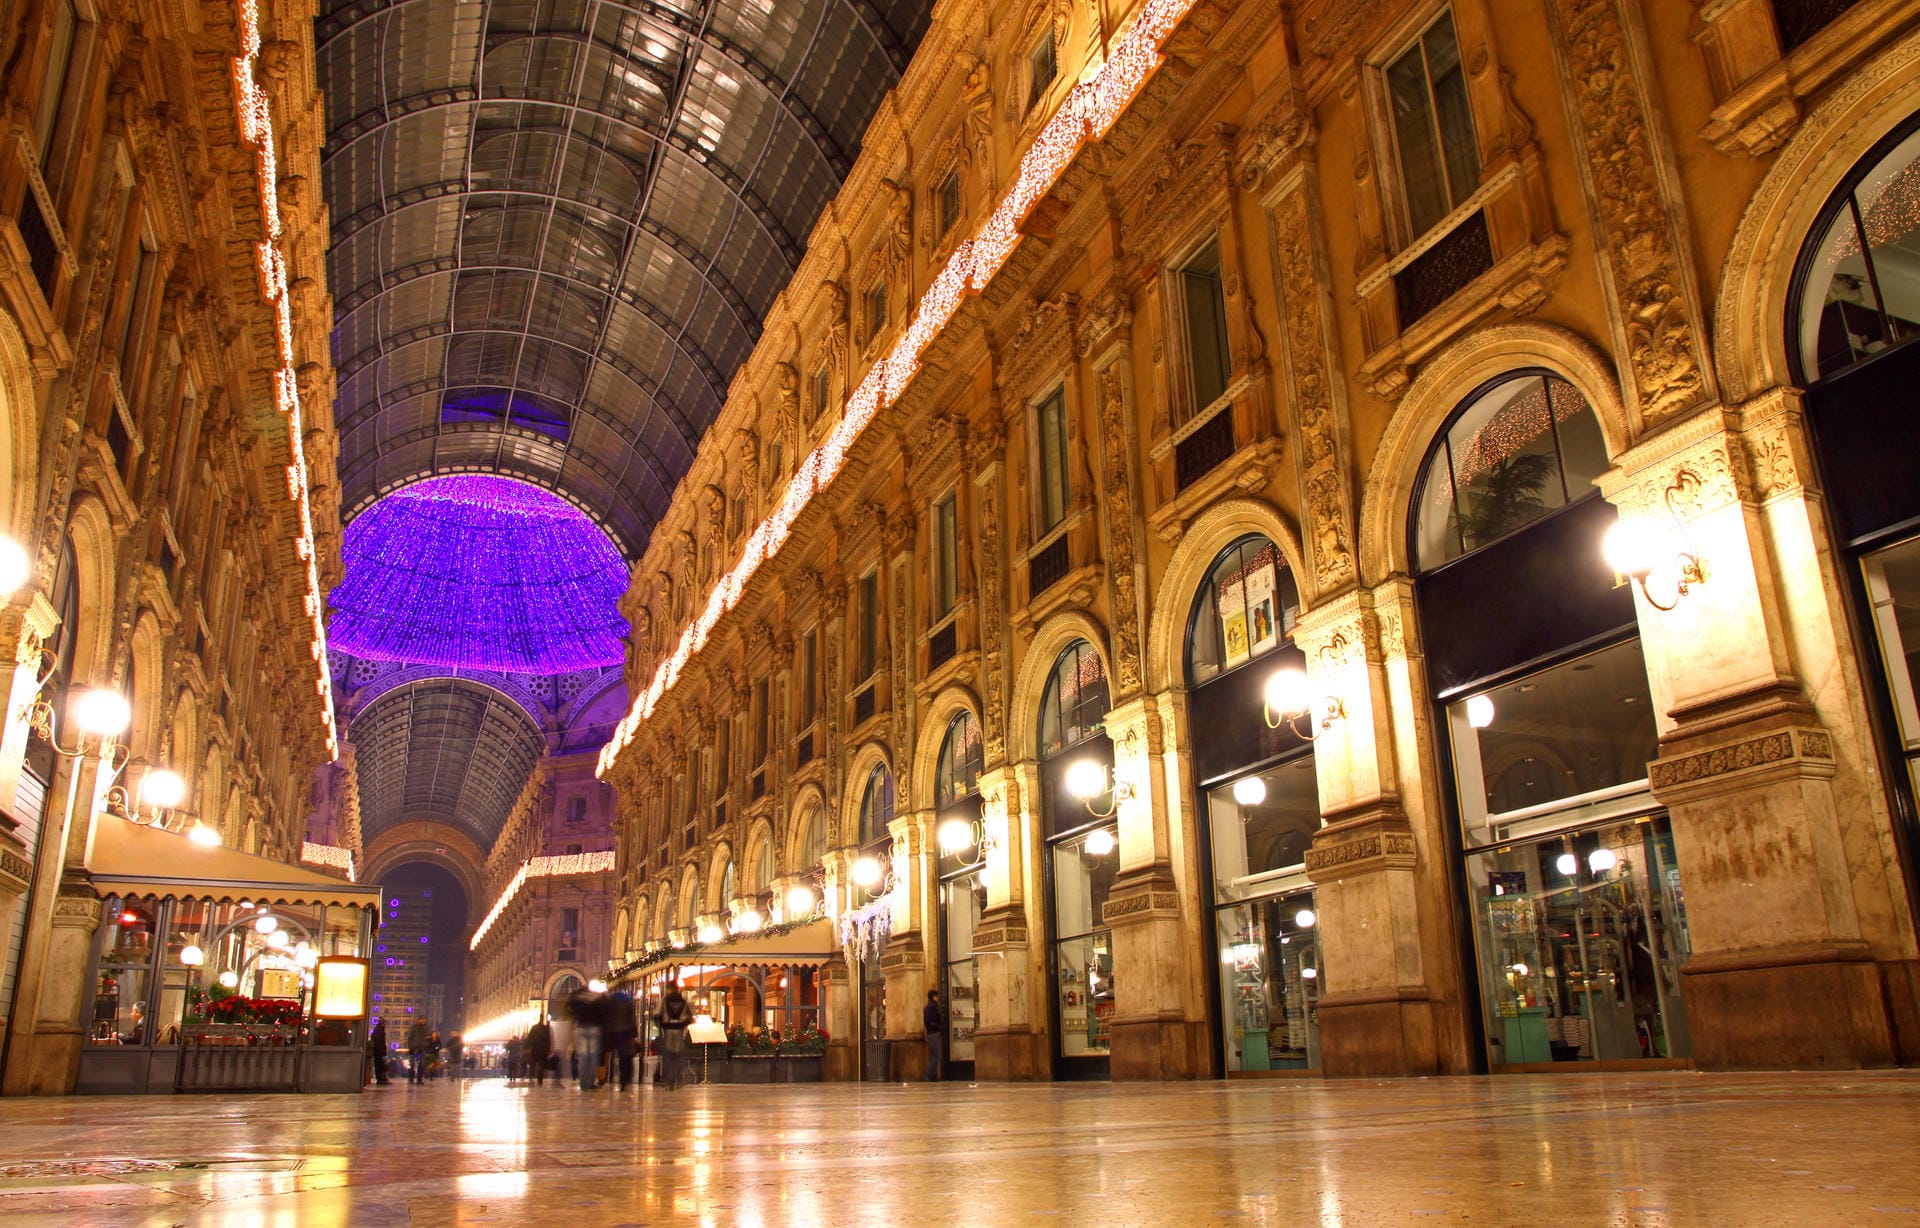 Italienische Luxusmarken wie Gucci und Loro Piana kann man teuer in Mailand shoppen (wie hier im Bild), oder günstig in einem der unzähligen Fabrikverkäufe in der Toskana.